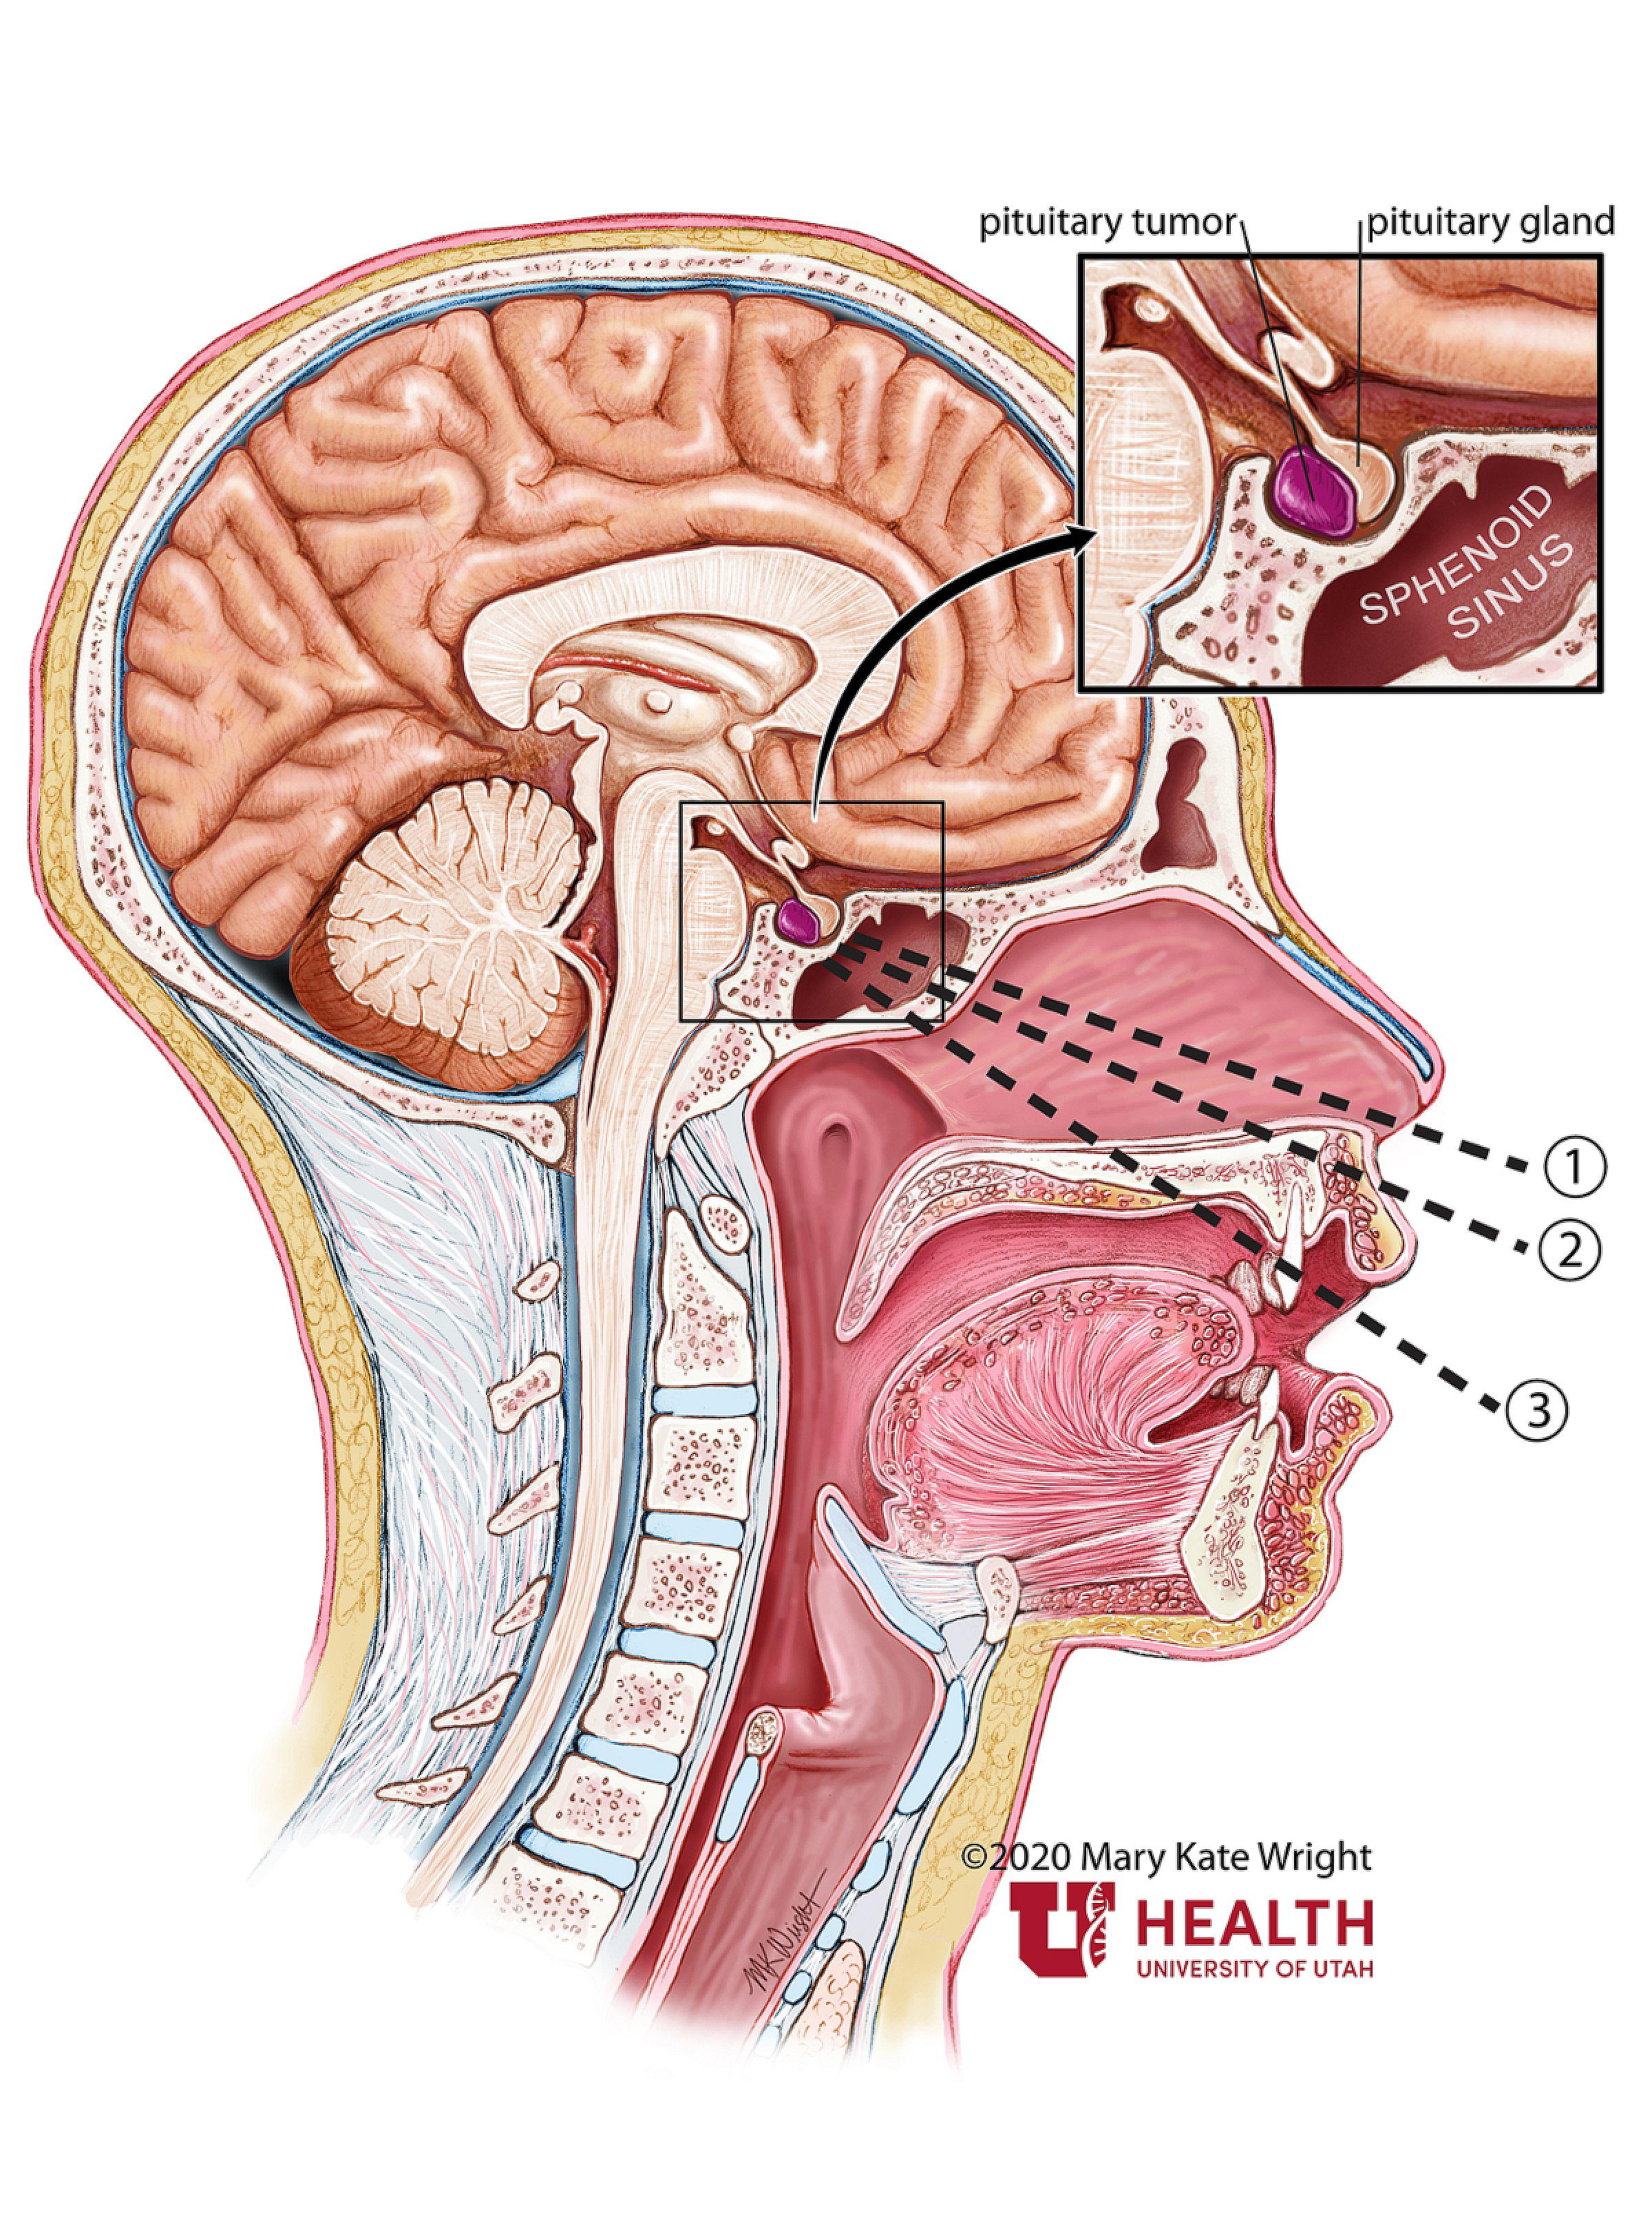 Pituitary tumor anatomy